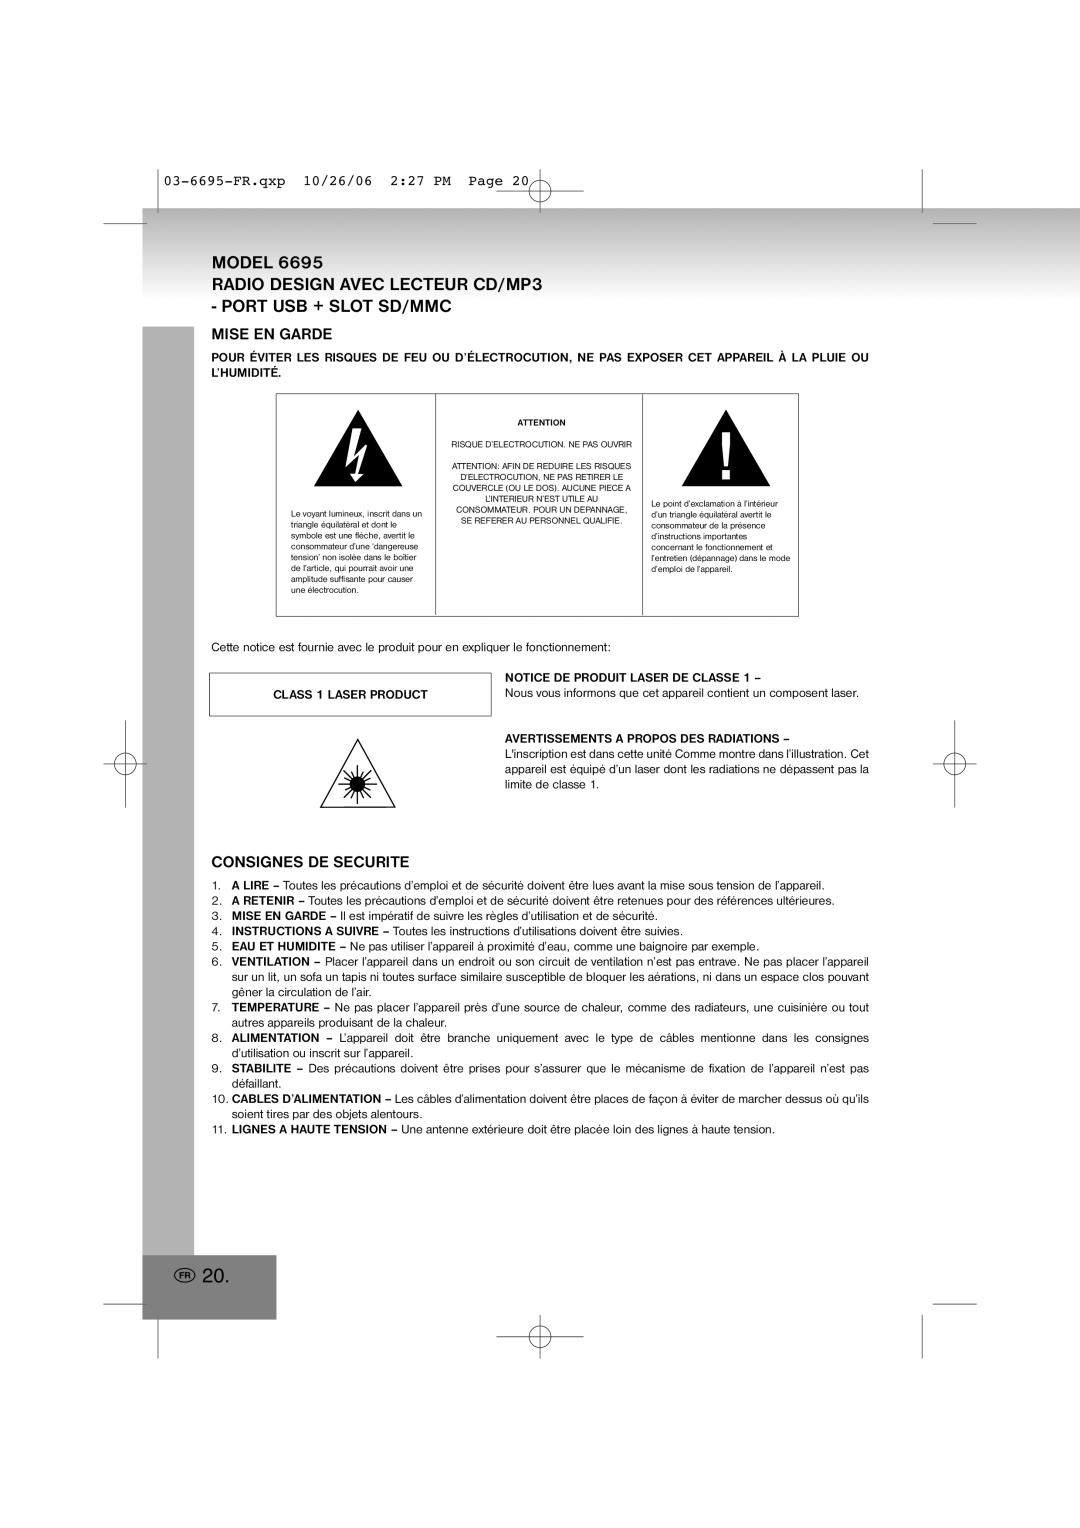 Elta manual Mise En Garde, Consignes De Securite, 03-6695-FR.qxp10/26/06 2 27 PM Page, Model 